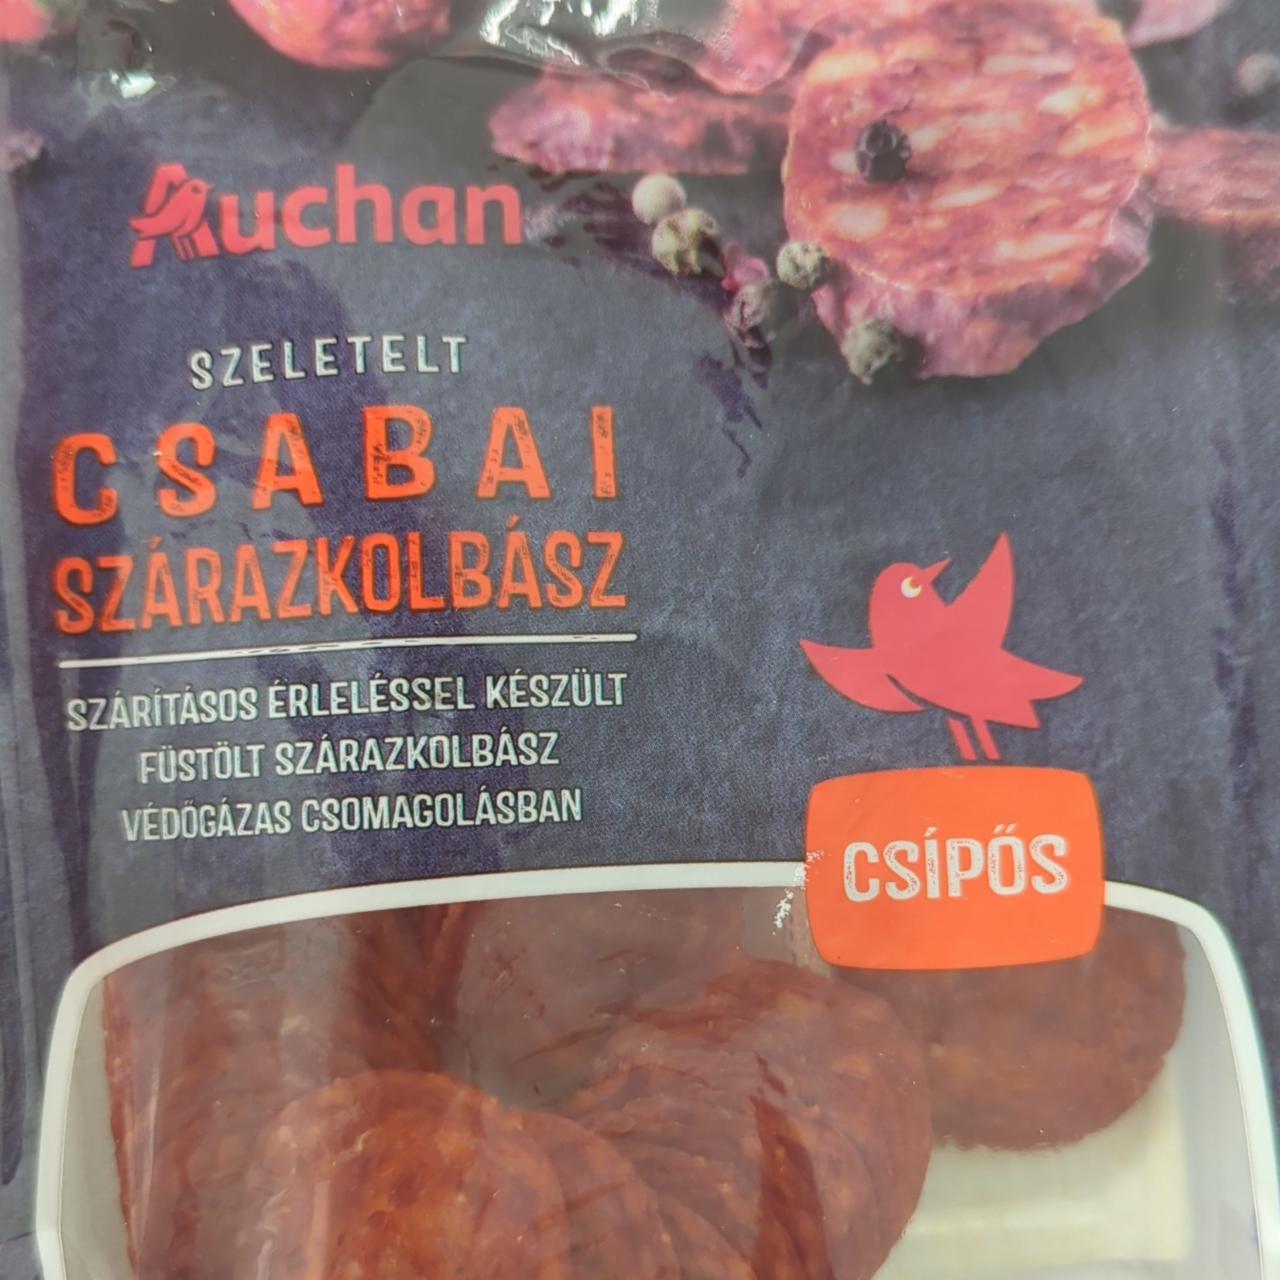 Képek - Szeletelt Csabai szárazkolbász - csípős Auchan